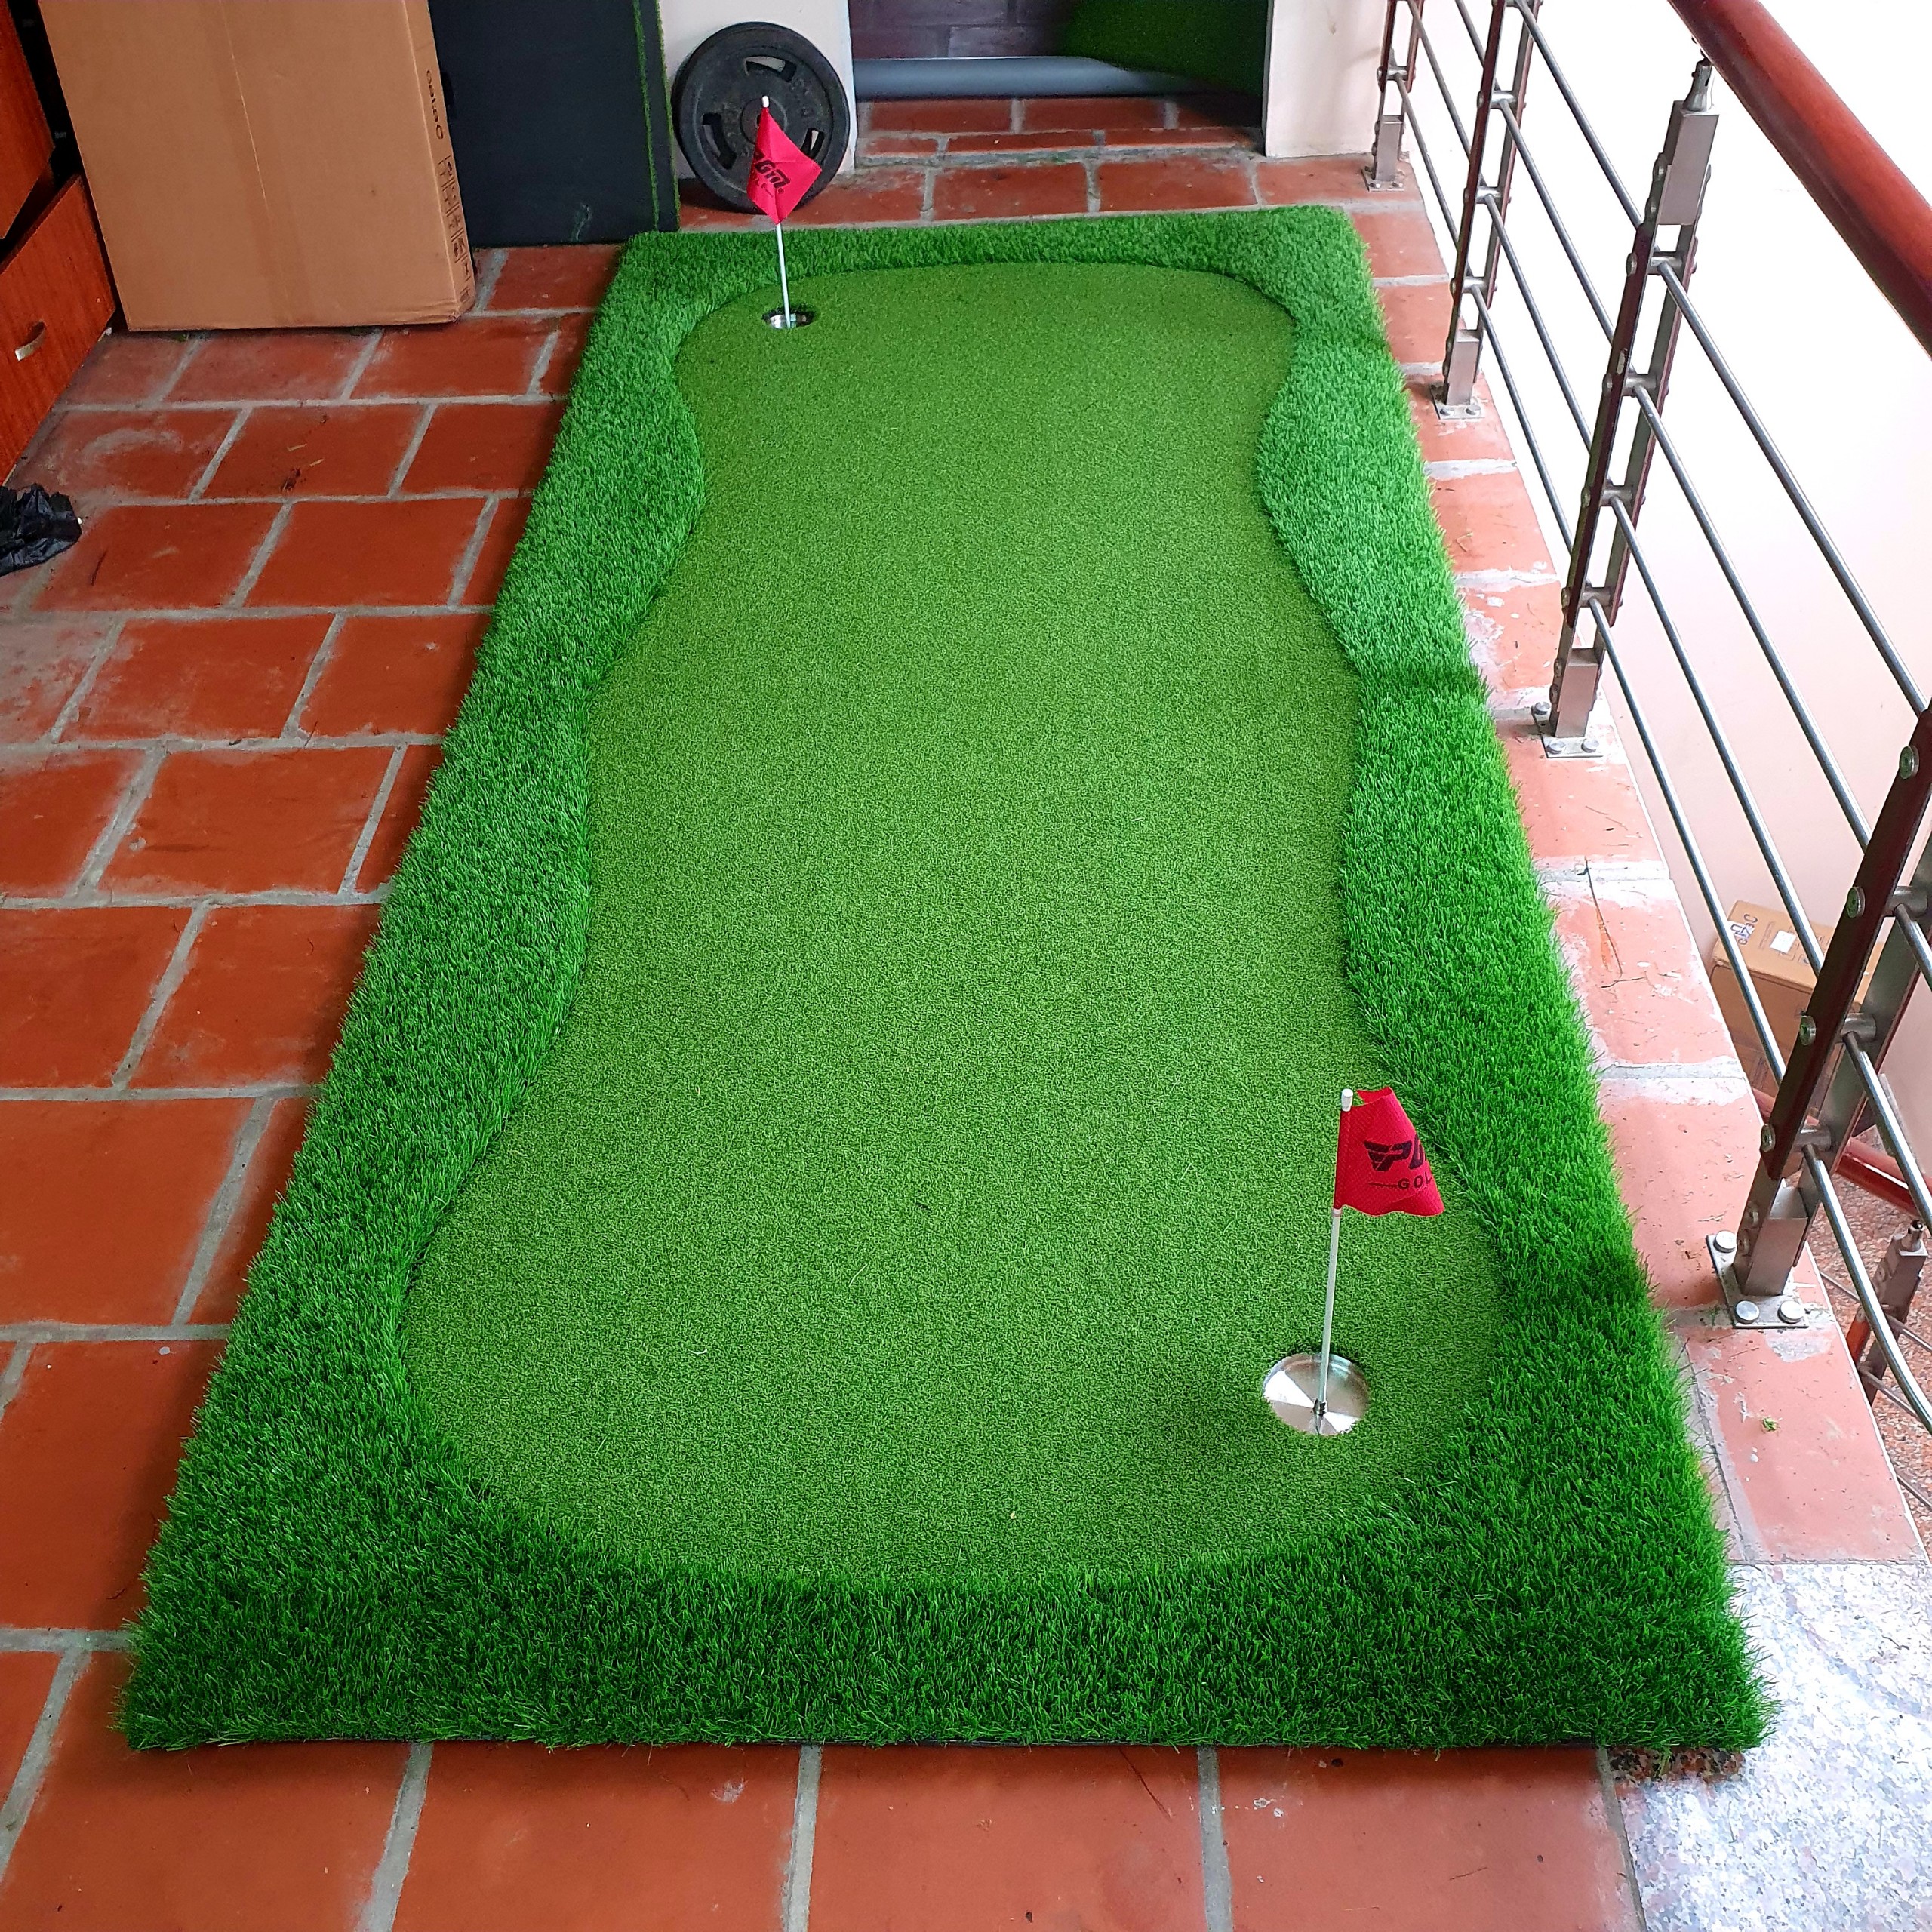 Bộ Thảm tập Putting Golf [1,3m x 2,8m], Dày 3cm: Kèm 3 lỗ cờ inox, Cao cấp, Bền bỉ, Đàn hồi tốt.